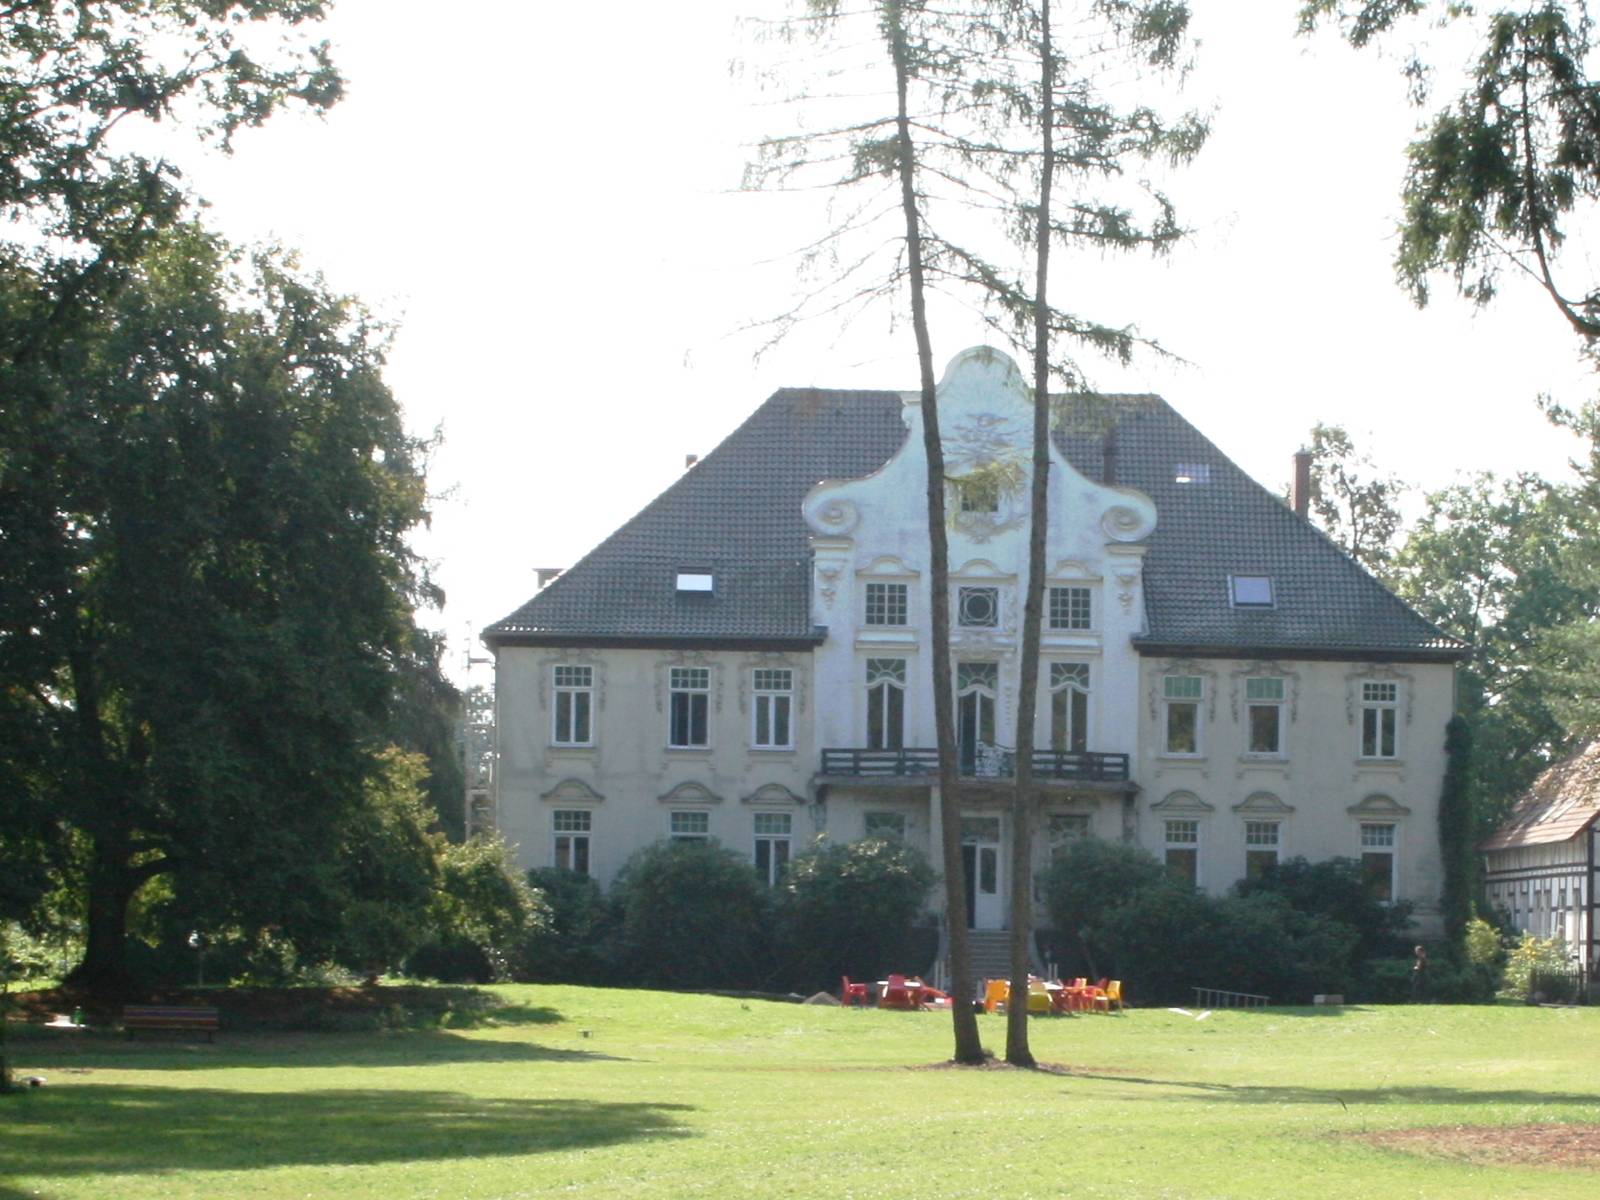 Blick über eine gepflegte Rasenfläche auf das Hauptgebäude des KulturGutes Poggenhagen.